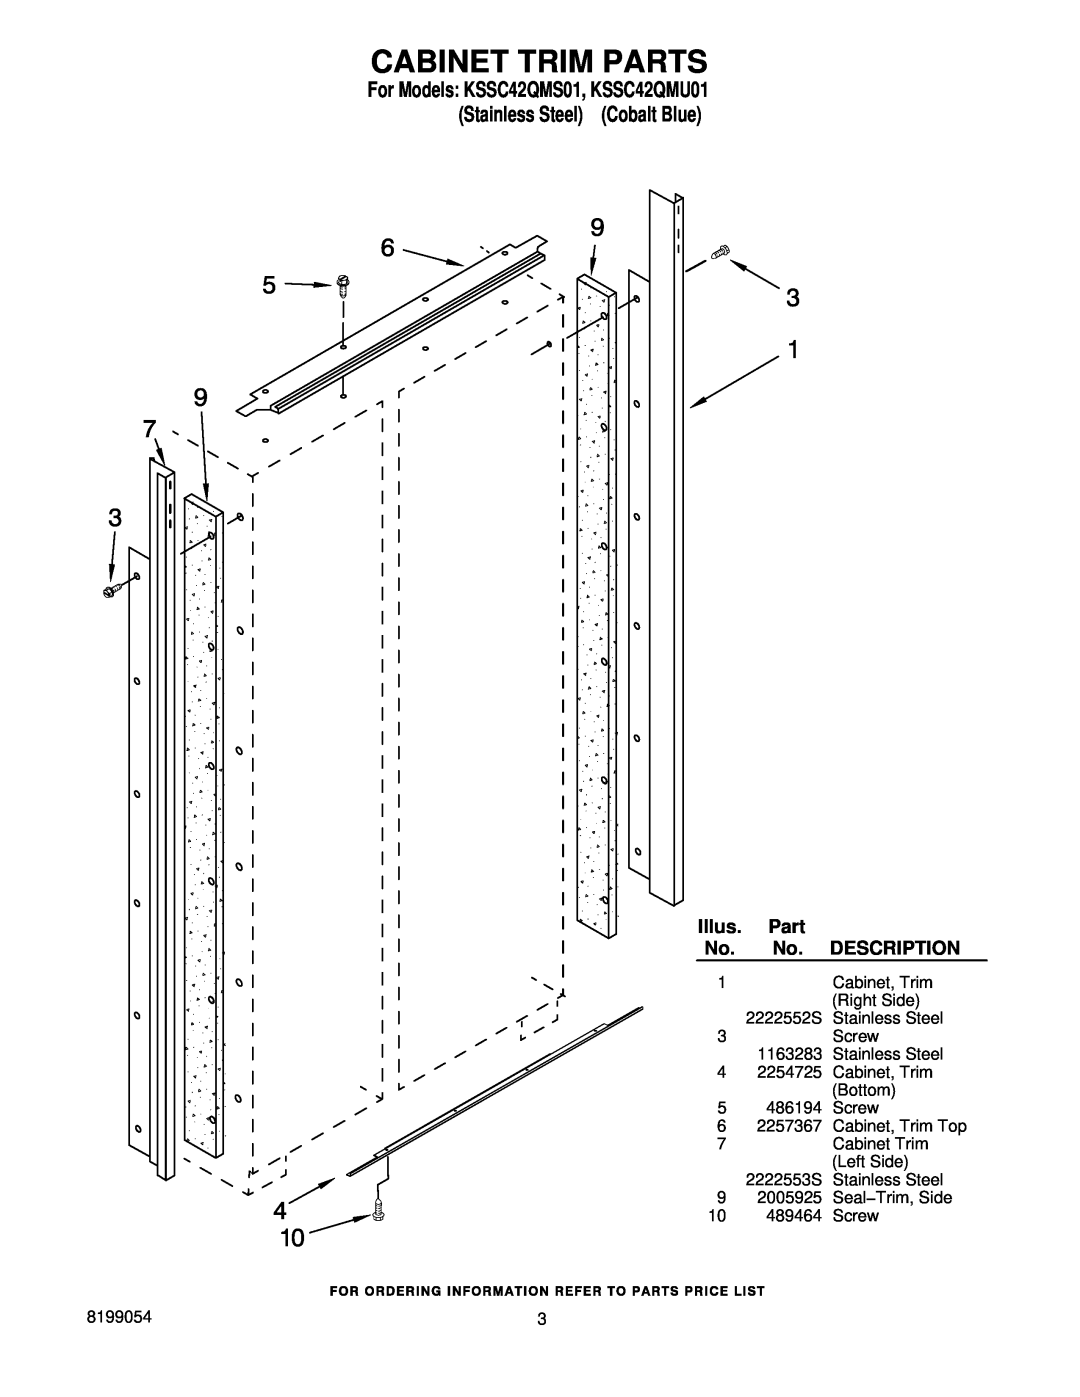 KitchenAid Cabinet Trim Parts, For Models KSSC42QMS01, KSSC42QMU01 Stainless Steel Cobalt Blue, Illus, Description 